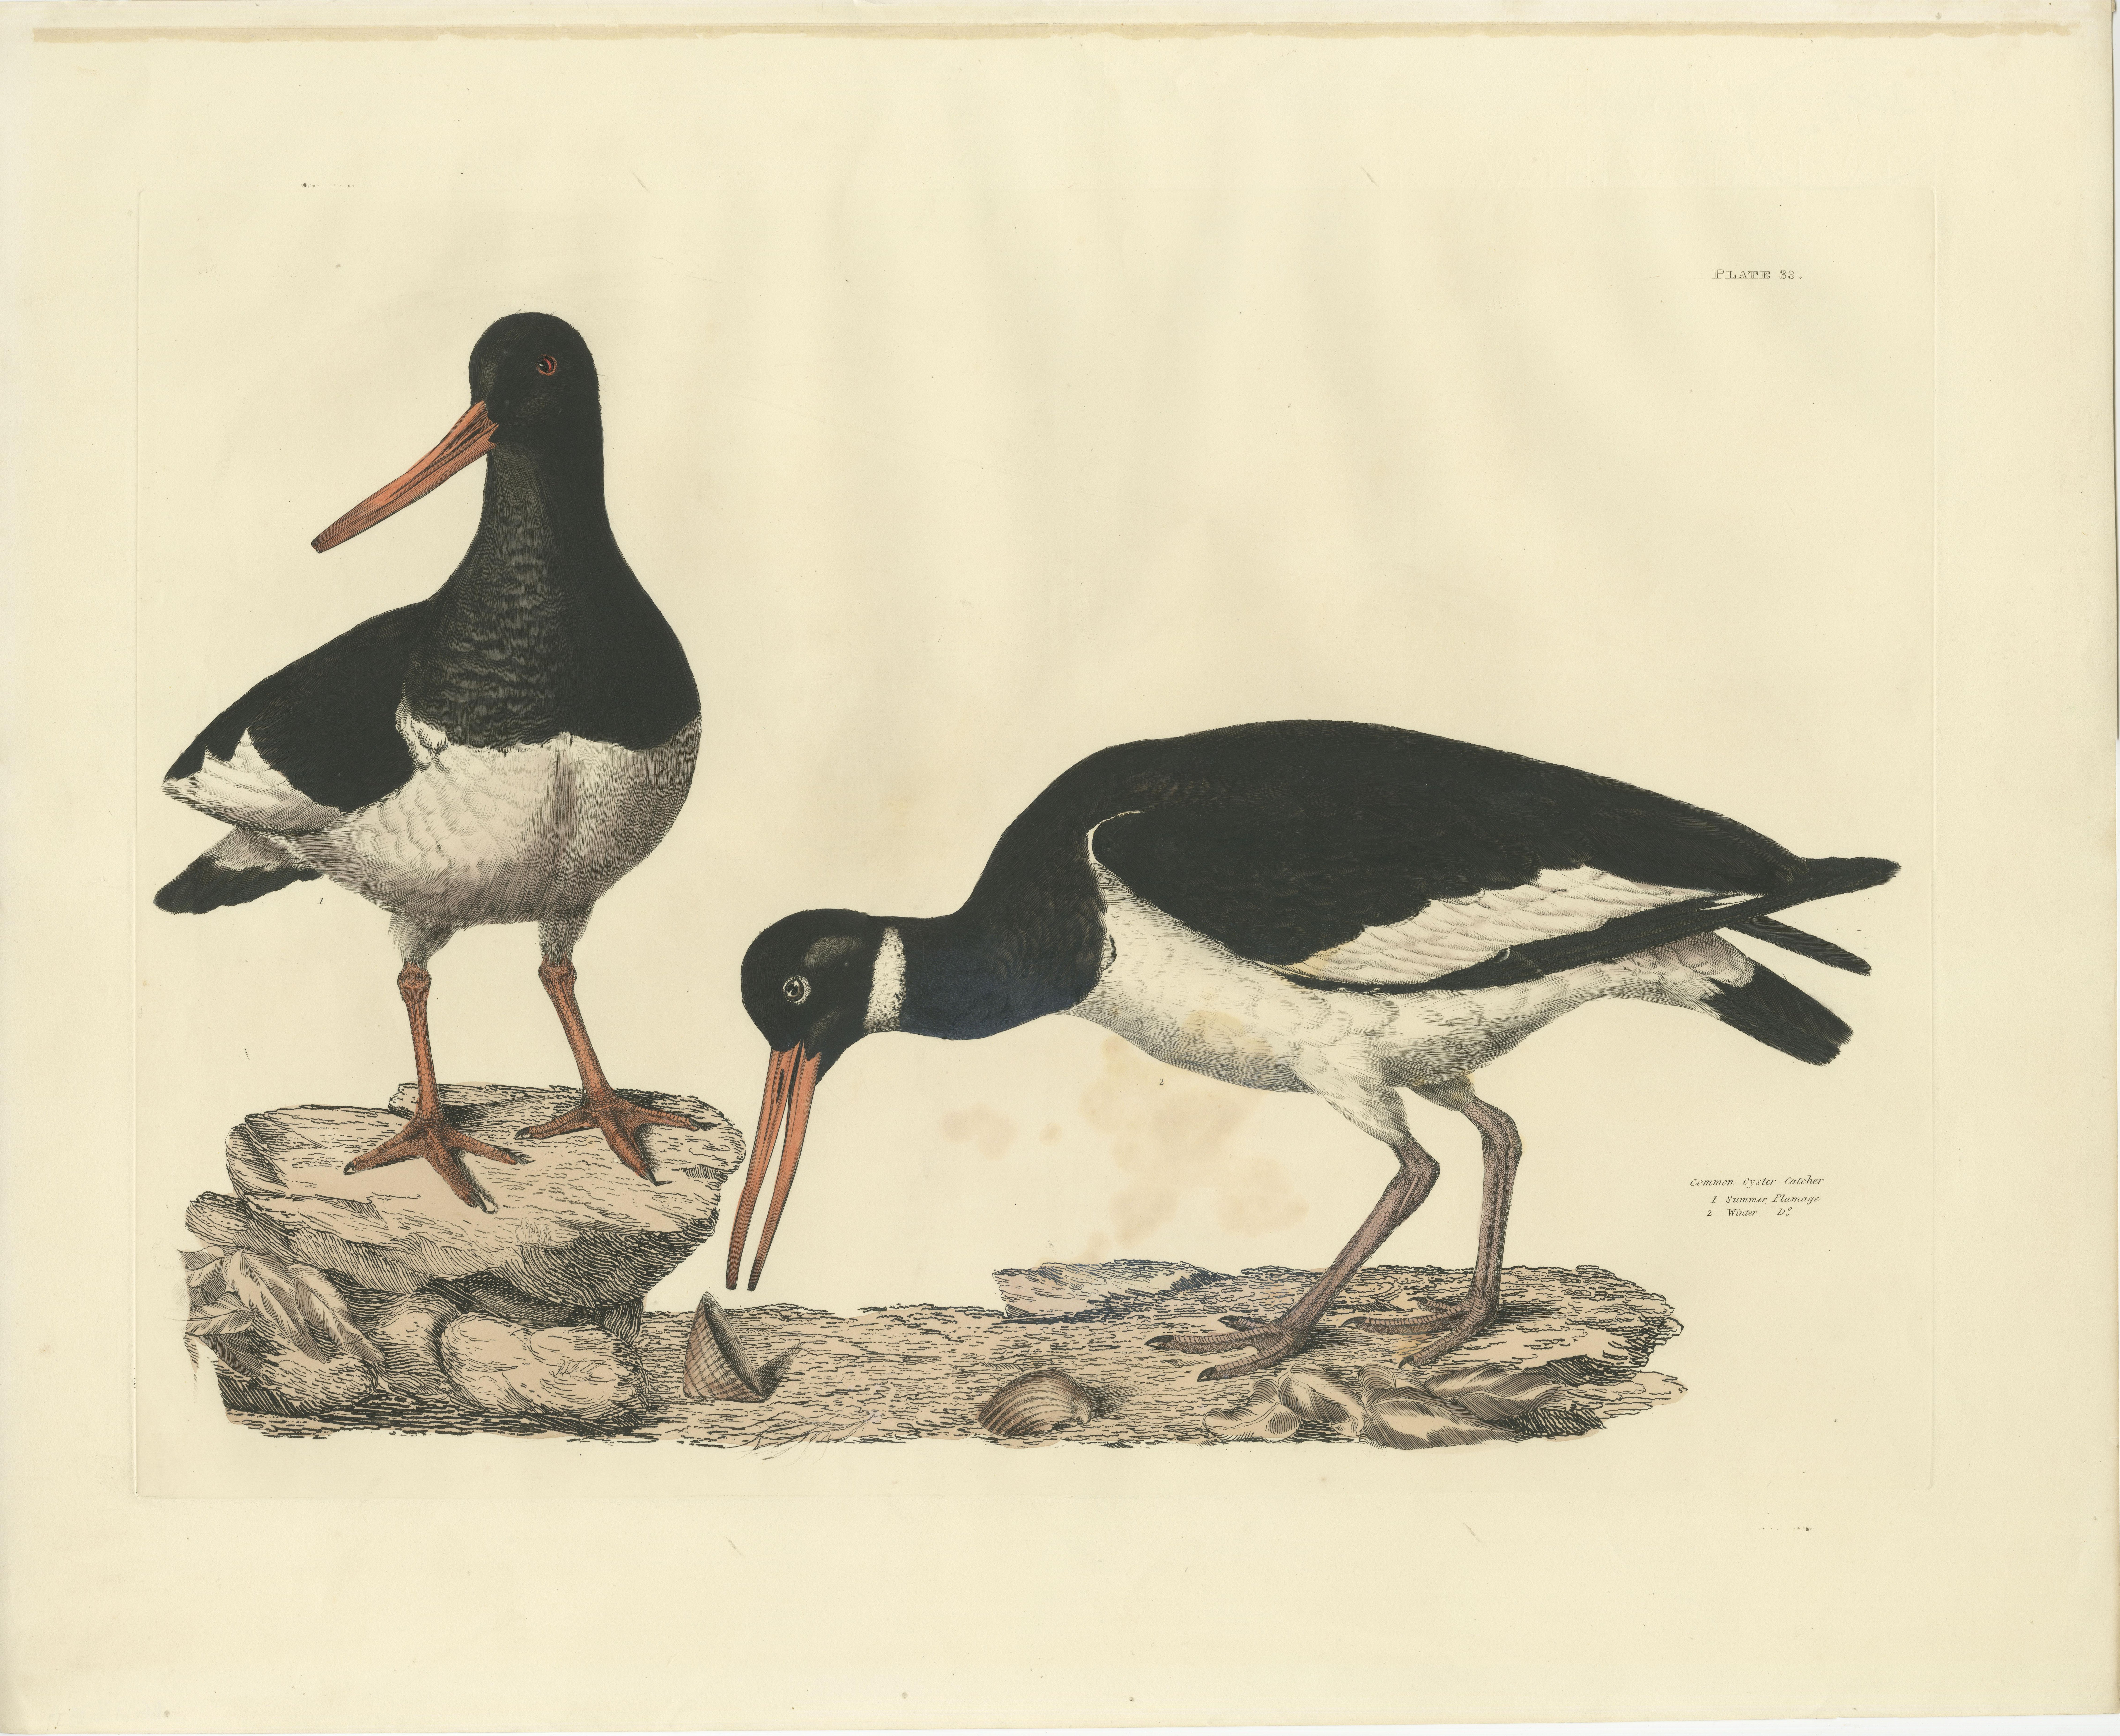 Grande estampe ornithologique originale colorée à la main, réalisée par Selby et publiée vers 1826. 

Cette gravure est une impression exquise tirée des 